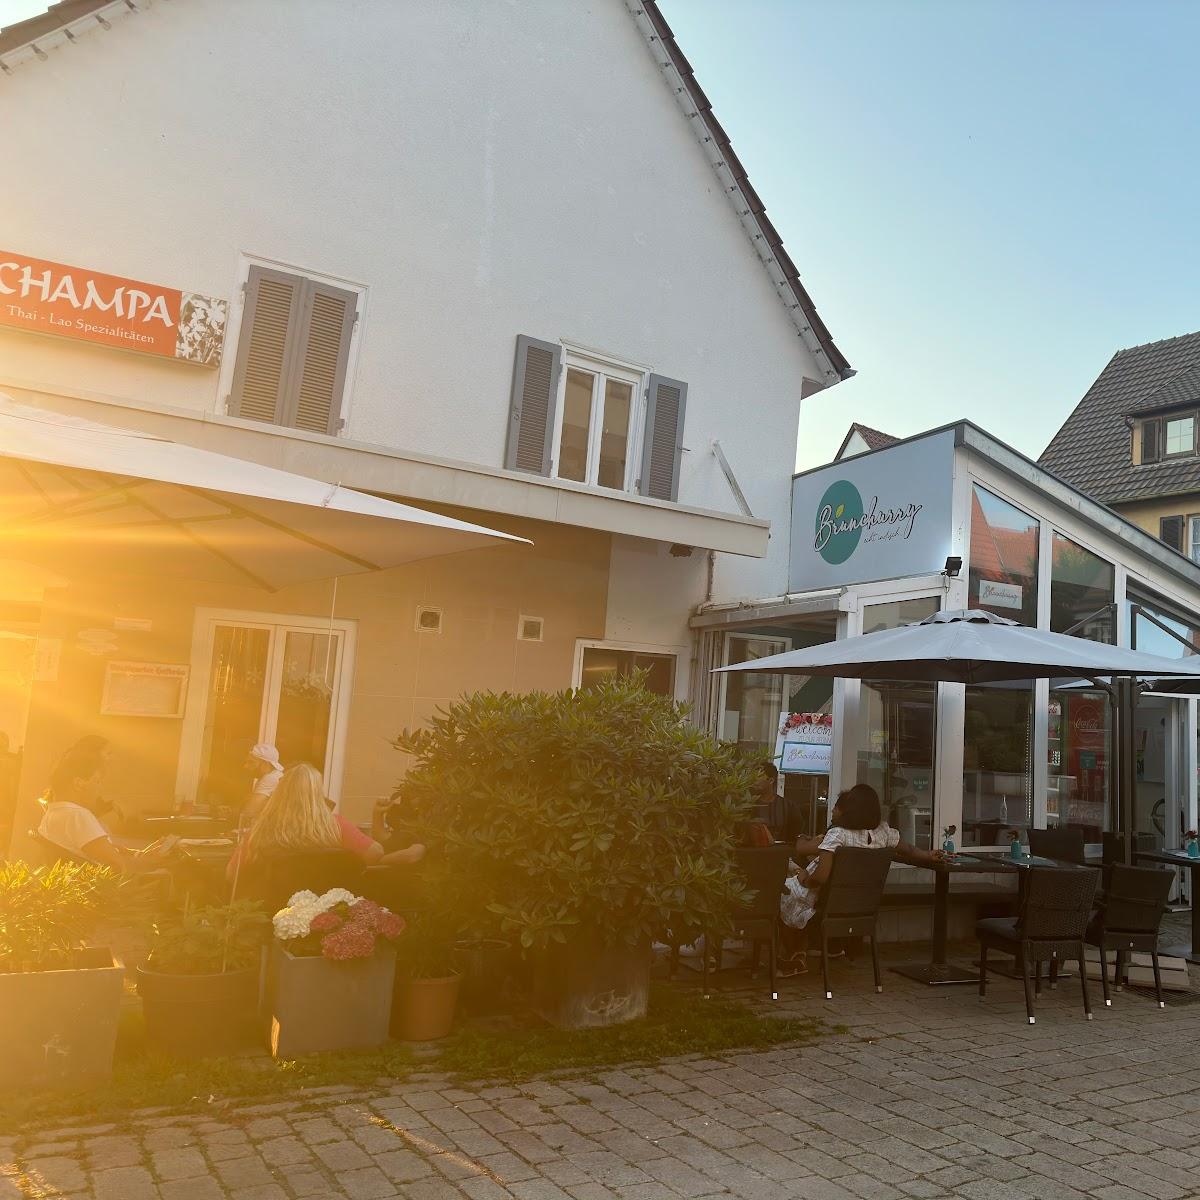 Restaurant "Brunchurry" in Sindelfingen